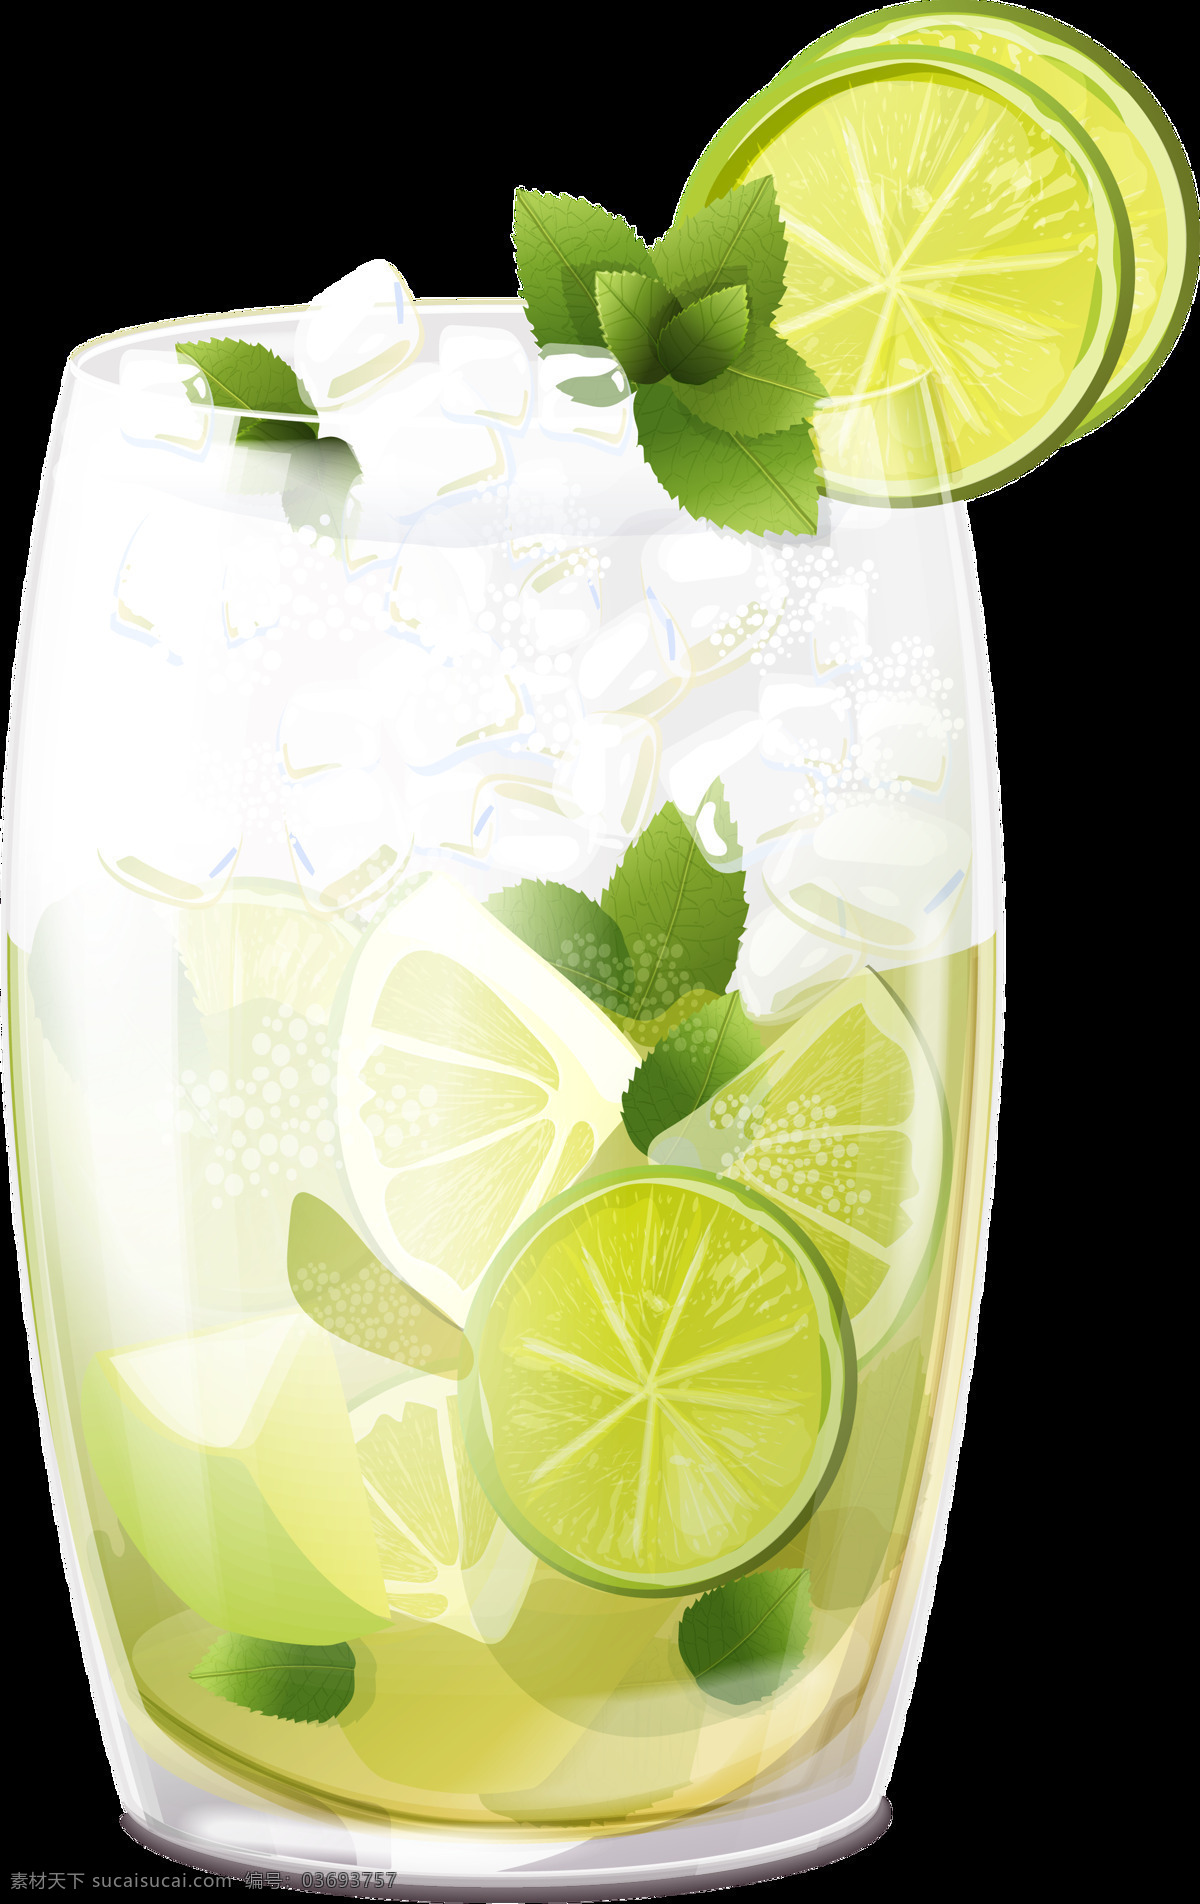 一杯 清凉 透 心 柠檬汁 透明 饮料 冰块 薄荷叶 免扣素材 柠檬片 透明素材 夏天 装饰图片